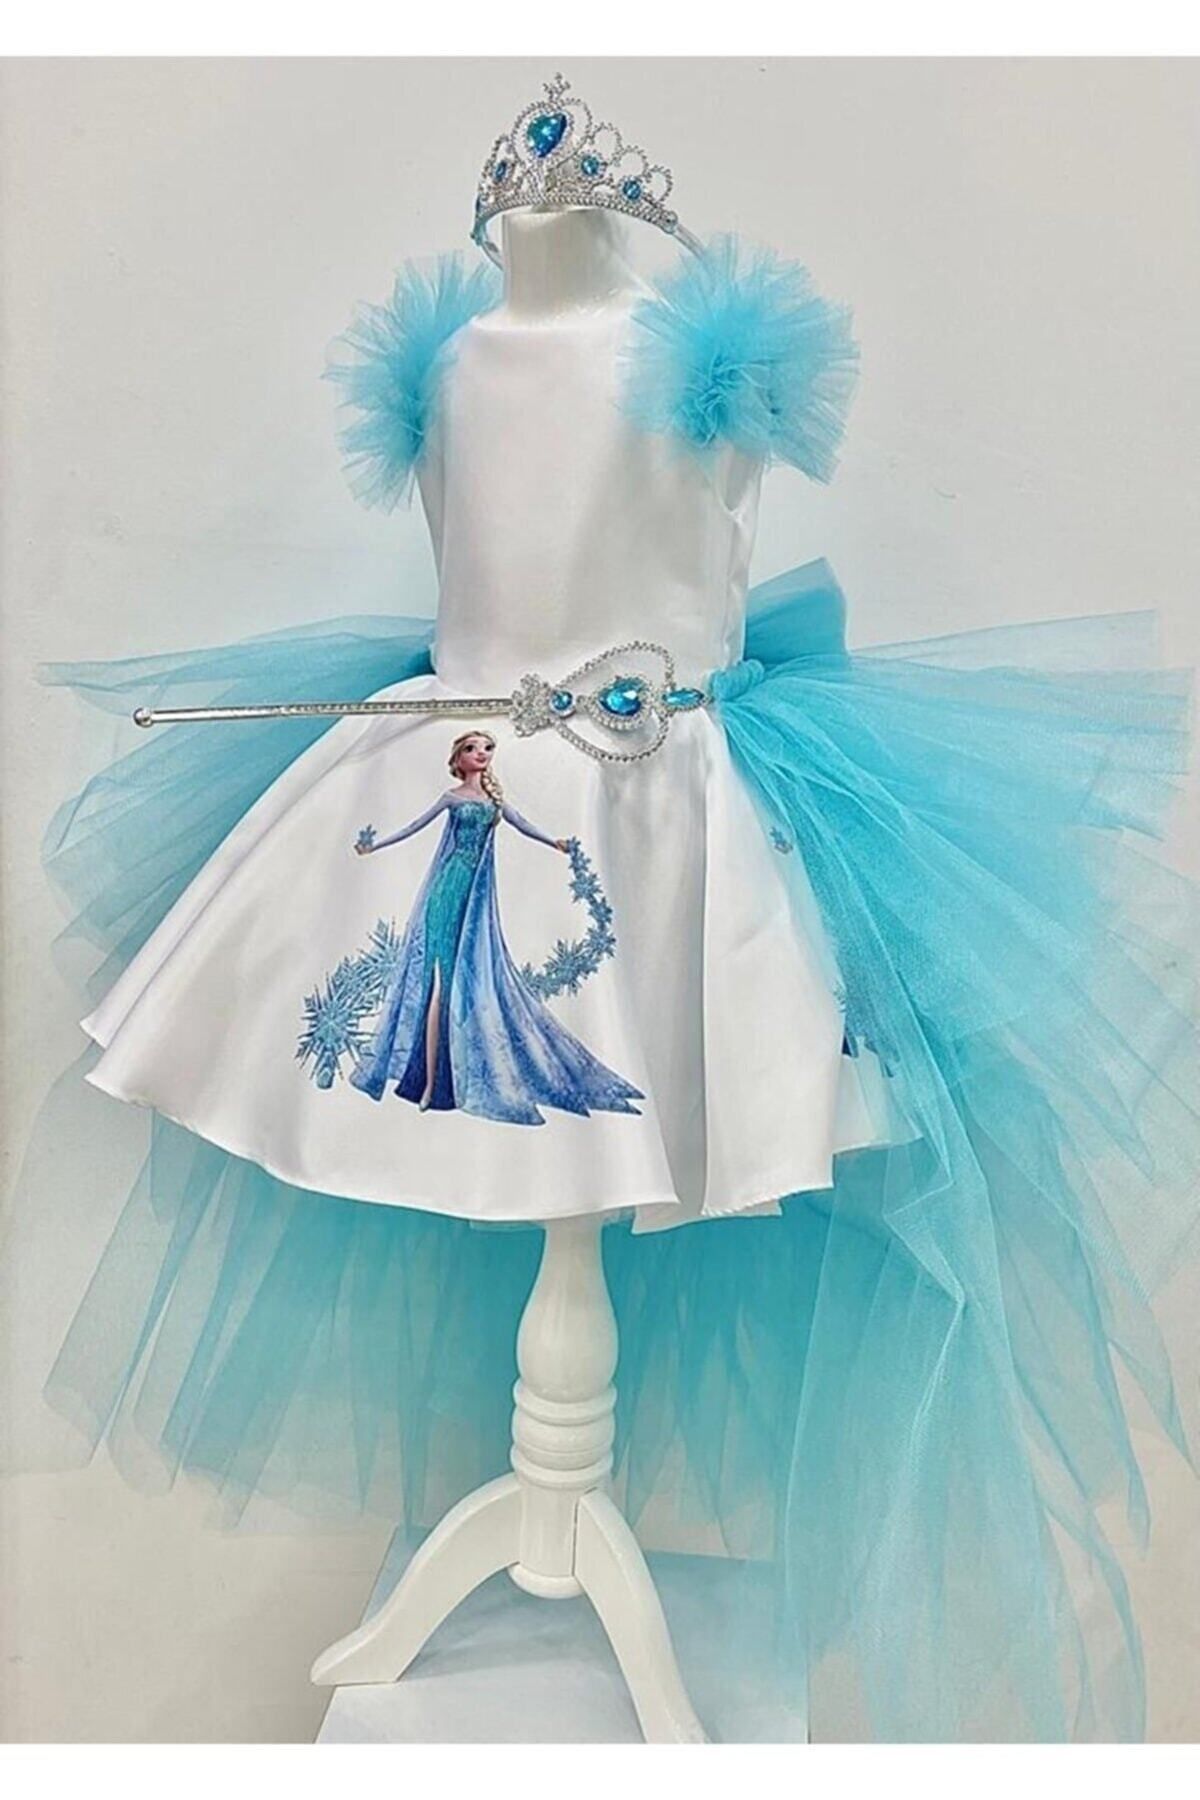 YAĞMUR KOStütüM Elsa Model Etek Baskılı Kız Çocuk Doğumgünü Elbise & Parti Kostüm